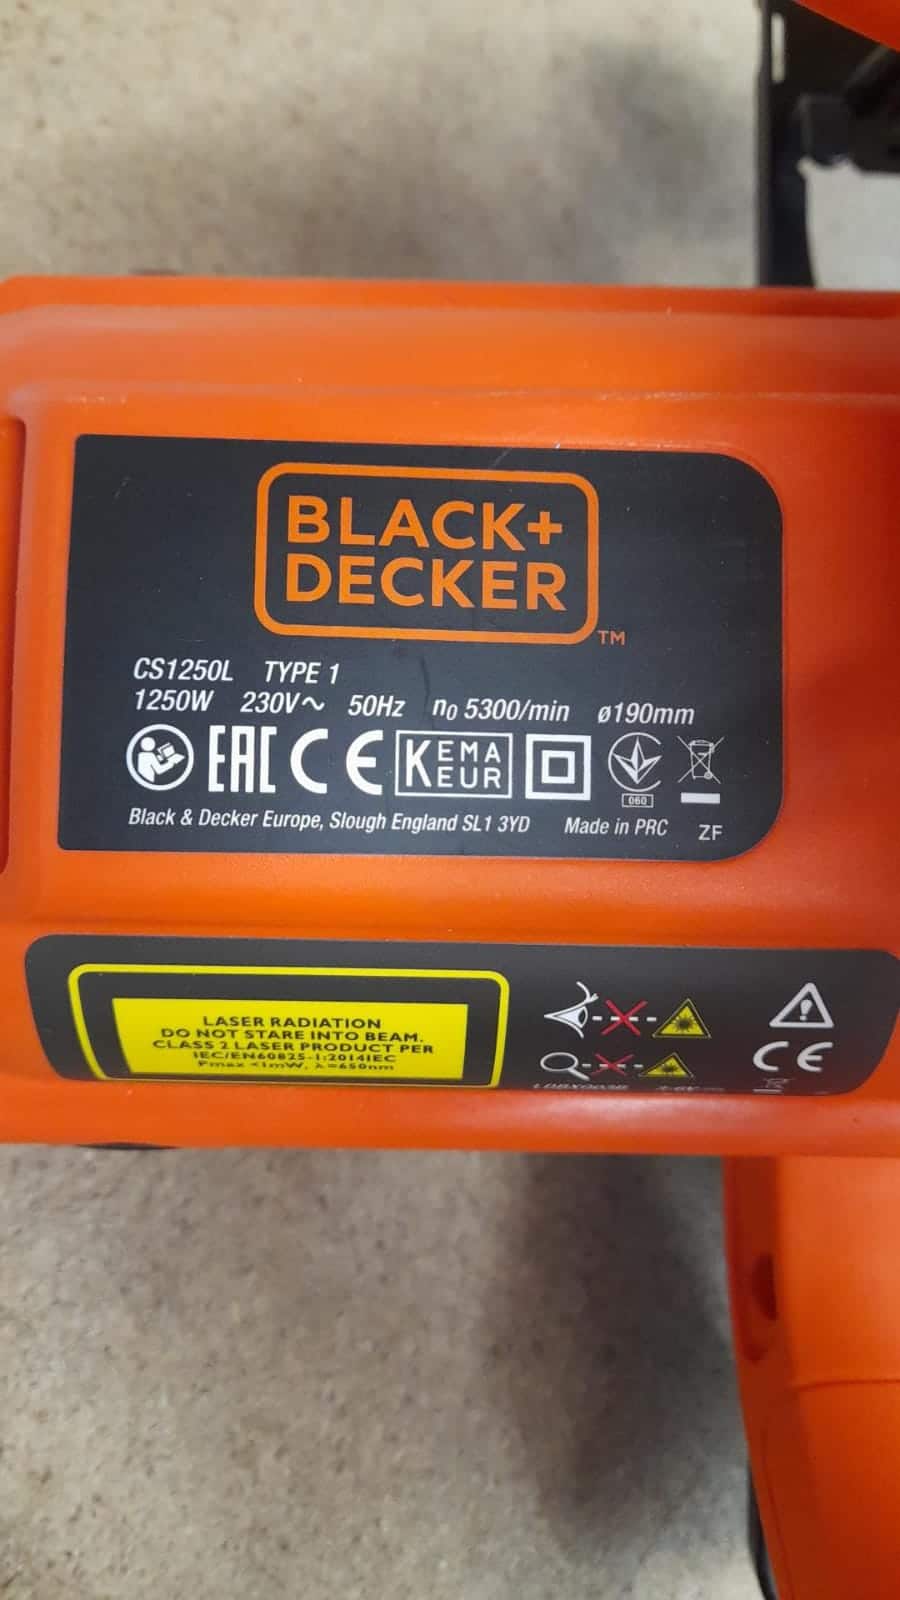 BLACK+DECKER 1250 W 66 mm Cutting Depth Blade Circular Saw Power Tool, CS1250L-GB